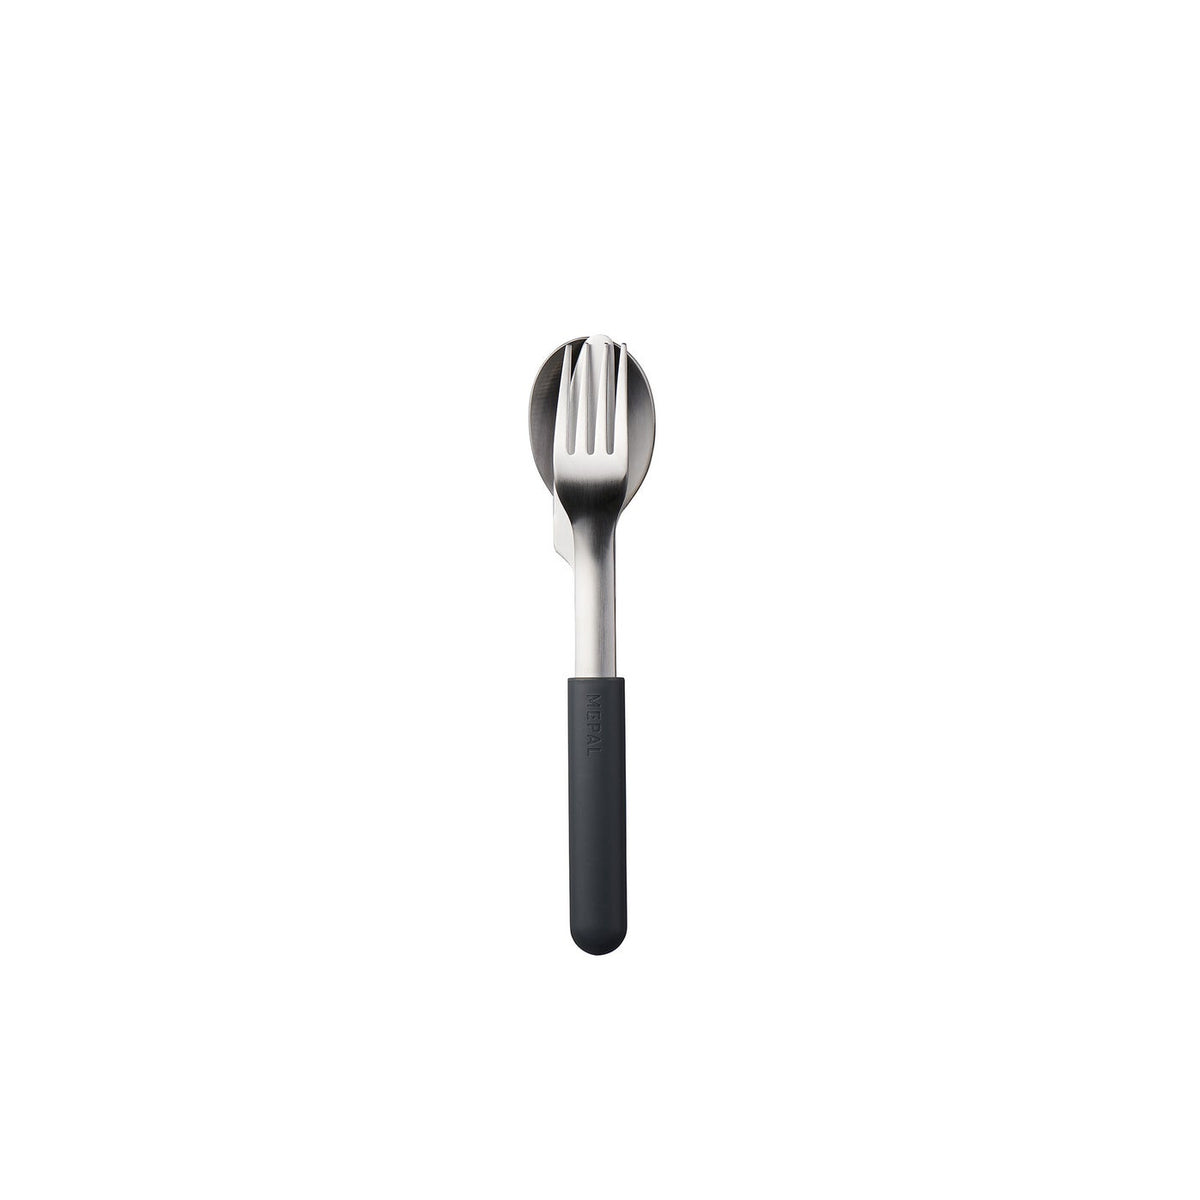 BLOOM Cutlery Set by Mepal